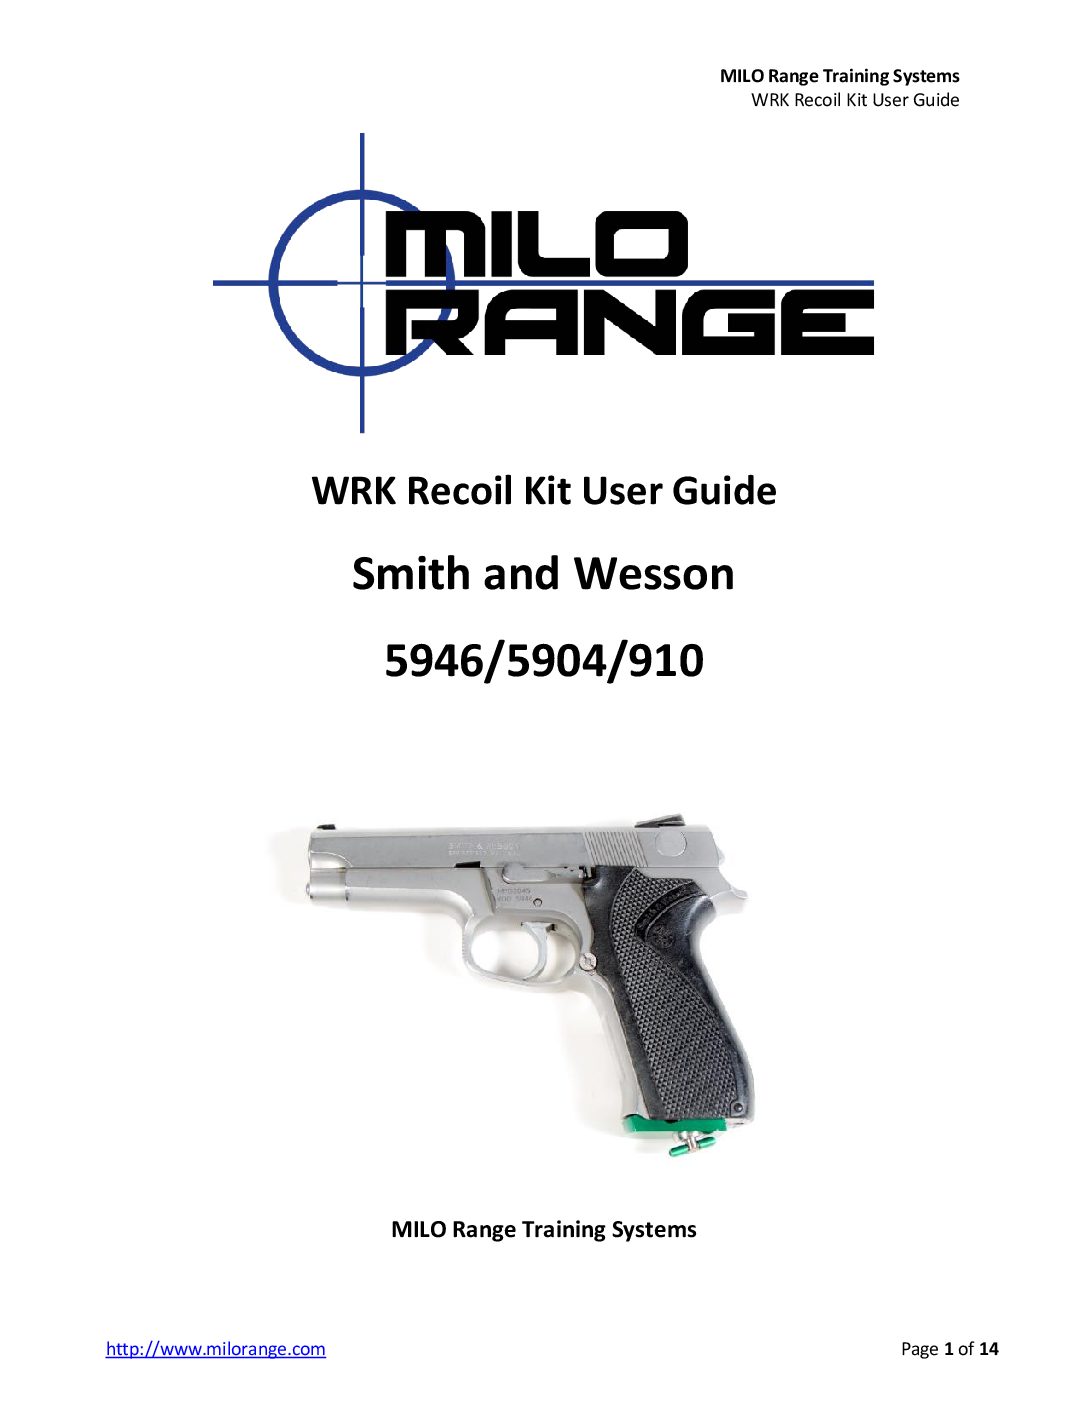 MILO Range Training Systems S&W 5946-5904-910 WRK Recoil Kit User Guide